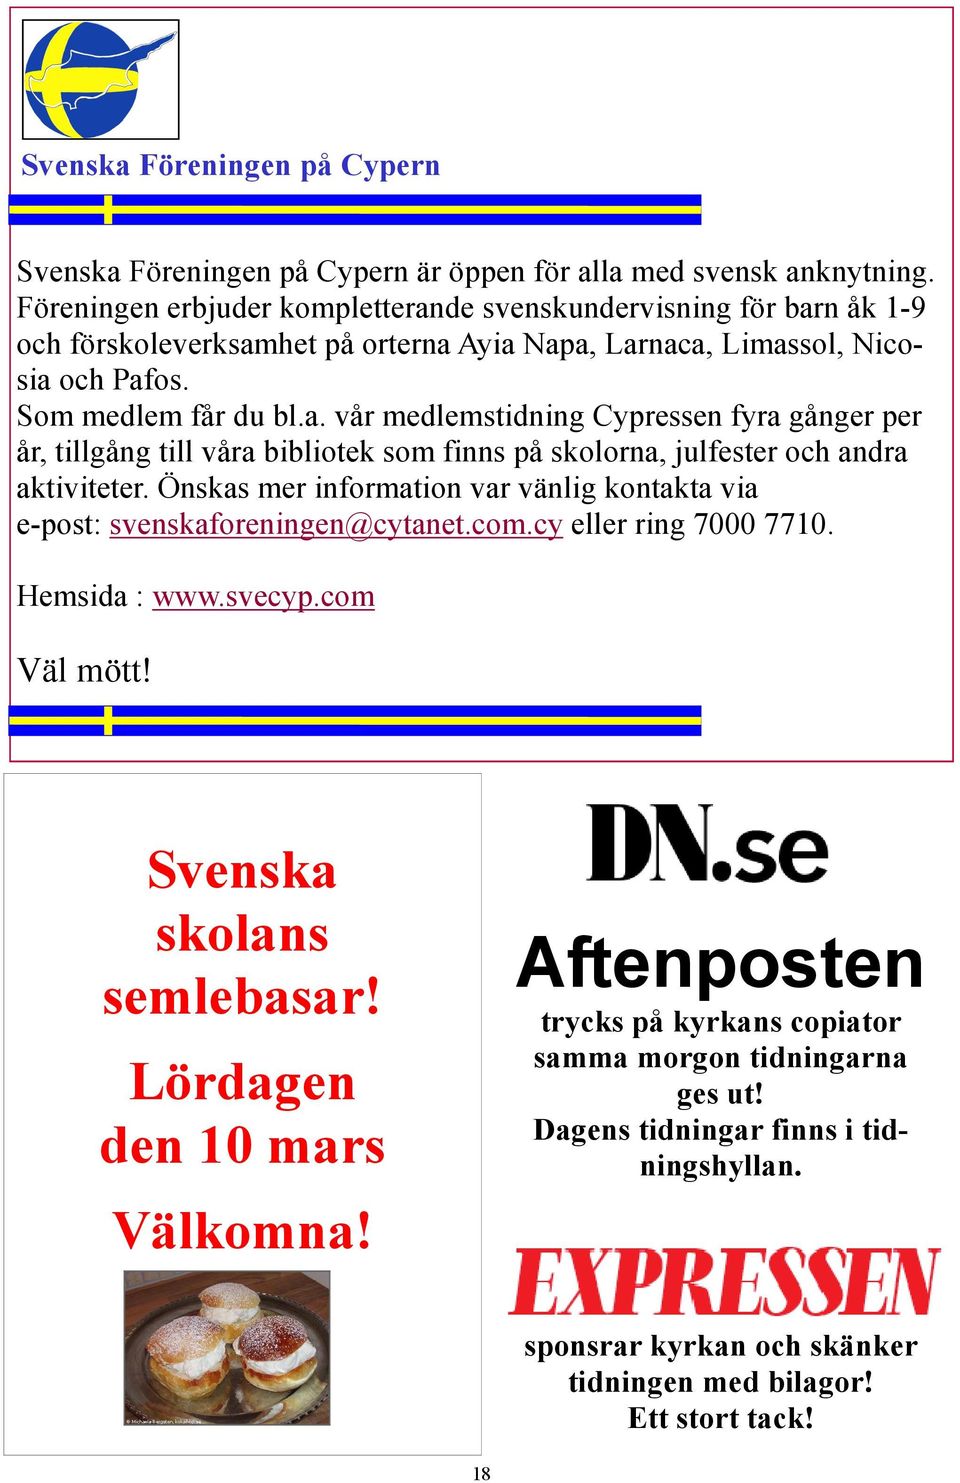 Önskas mer information var vänlig kontakta via e-post: svenskaforeningen@cytanet.com.cy eller ring 7000 7710. Hemsida : www.svecyp.com Väl mött! Svenska skolans semlebasar!